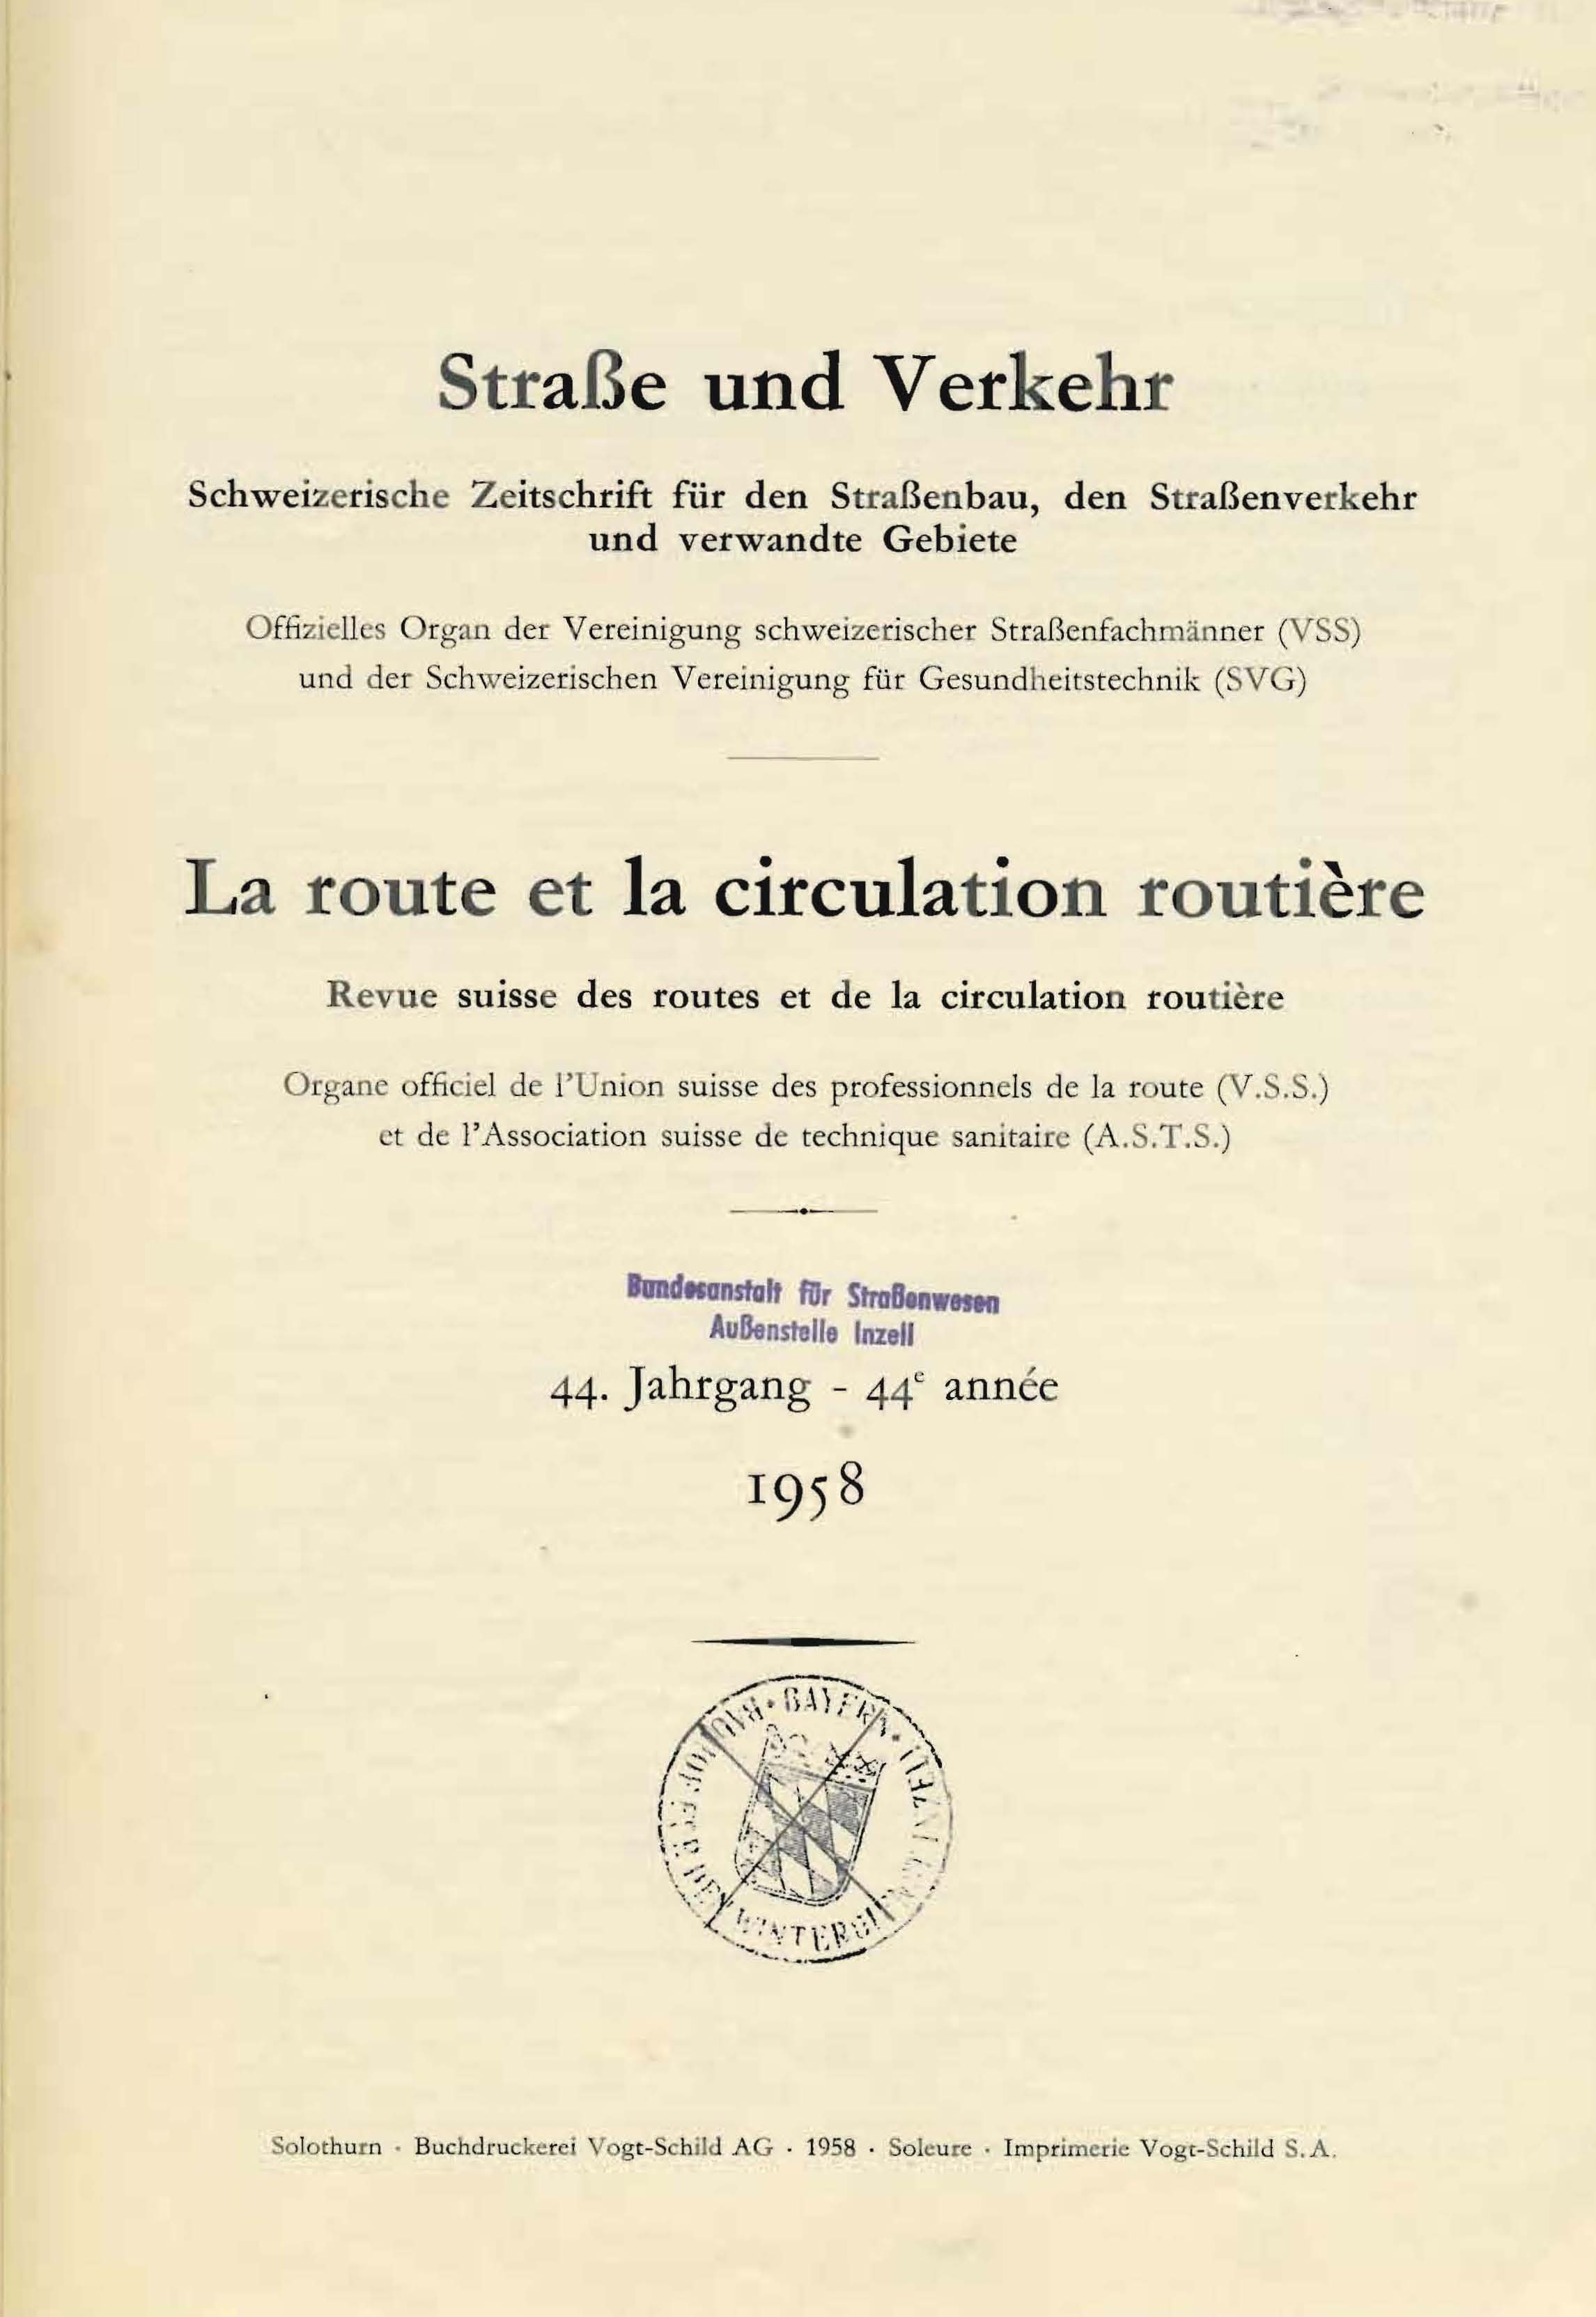 Strasse und Verkehr, 44. Jahrgang 1958